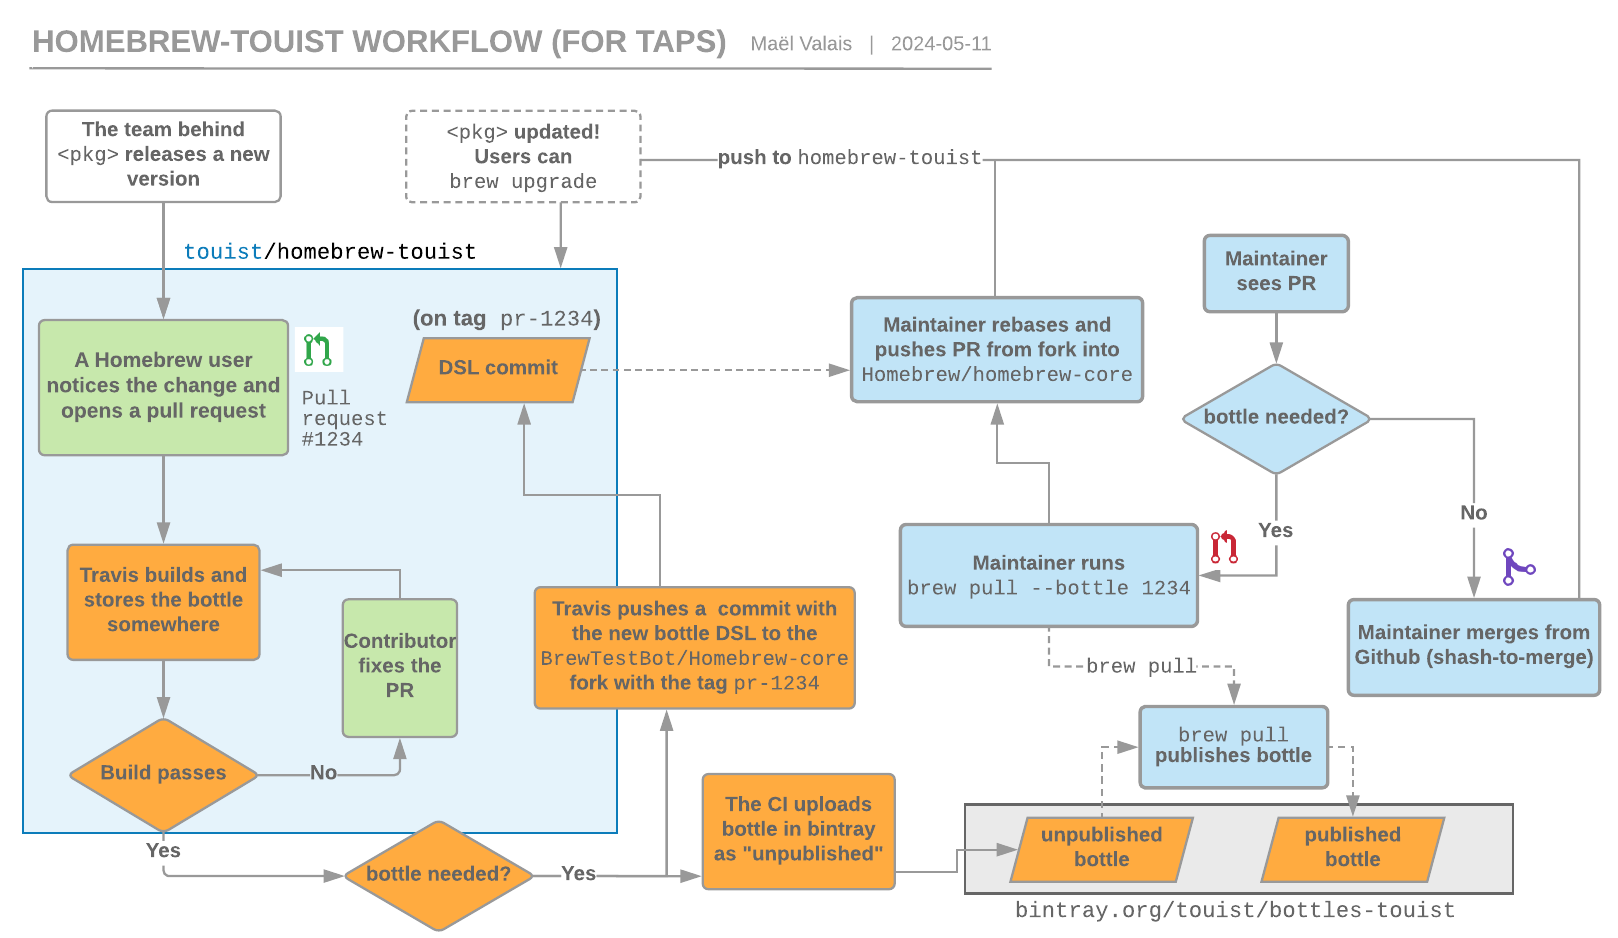 homebrew-touist workflow, a tap